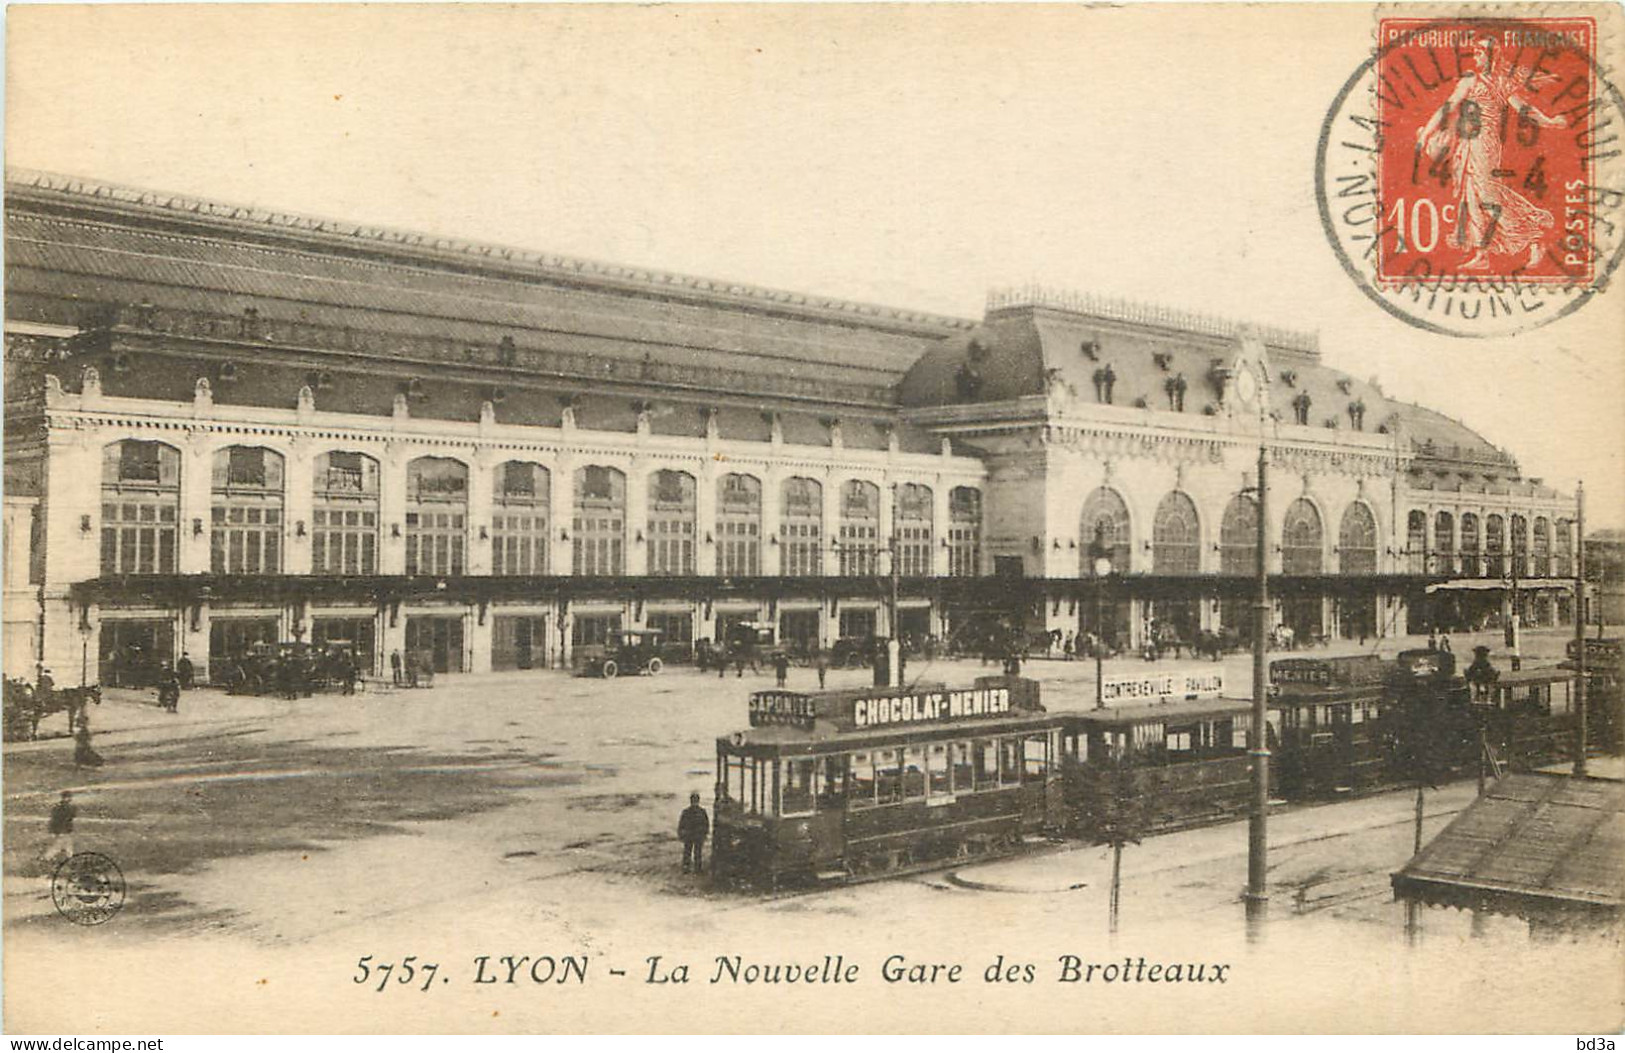  69   LYON    LA NOUVELLE  GARE DES BROTTEAUX - Lyon 6